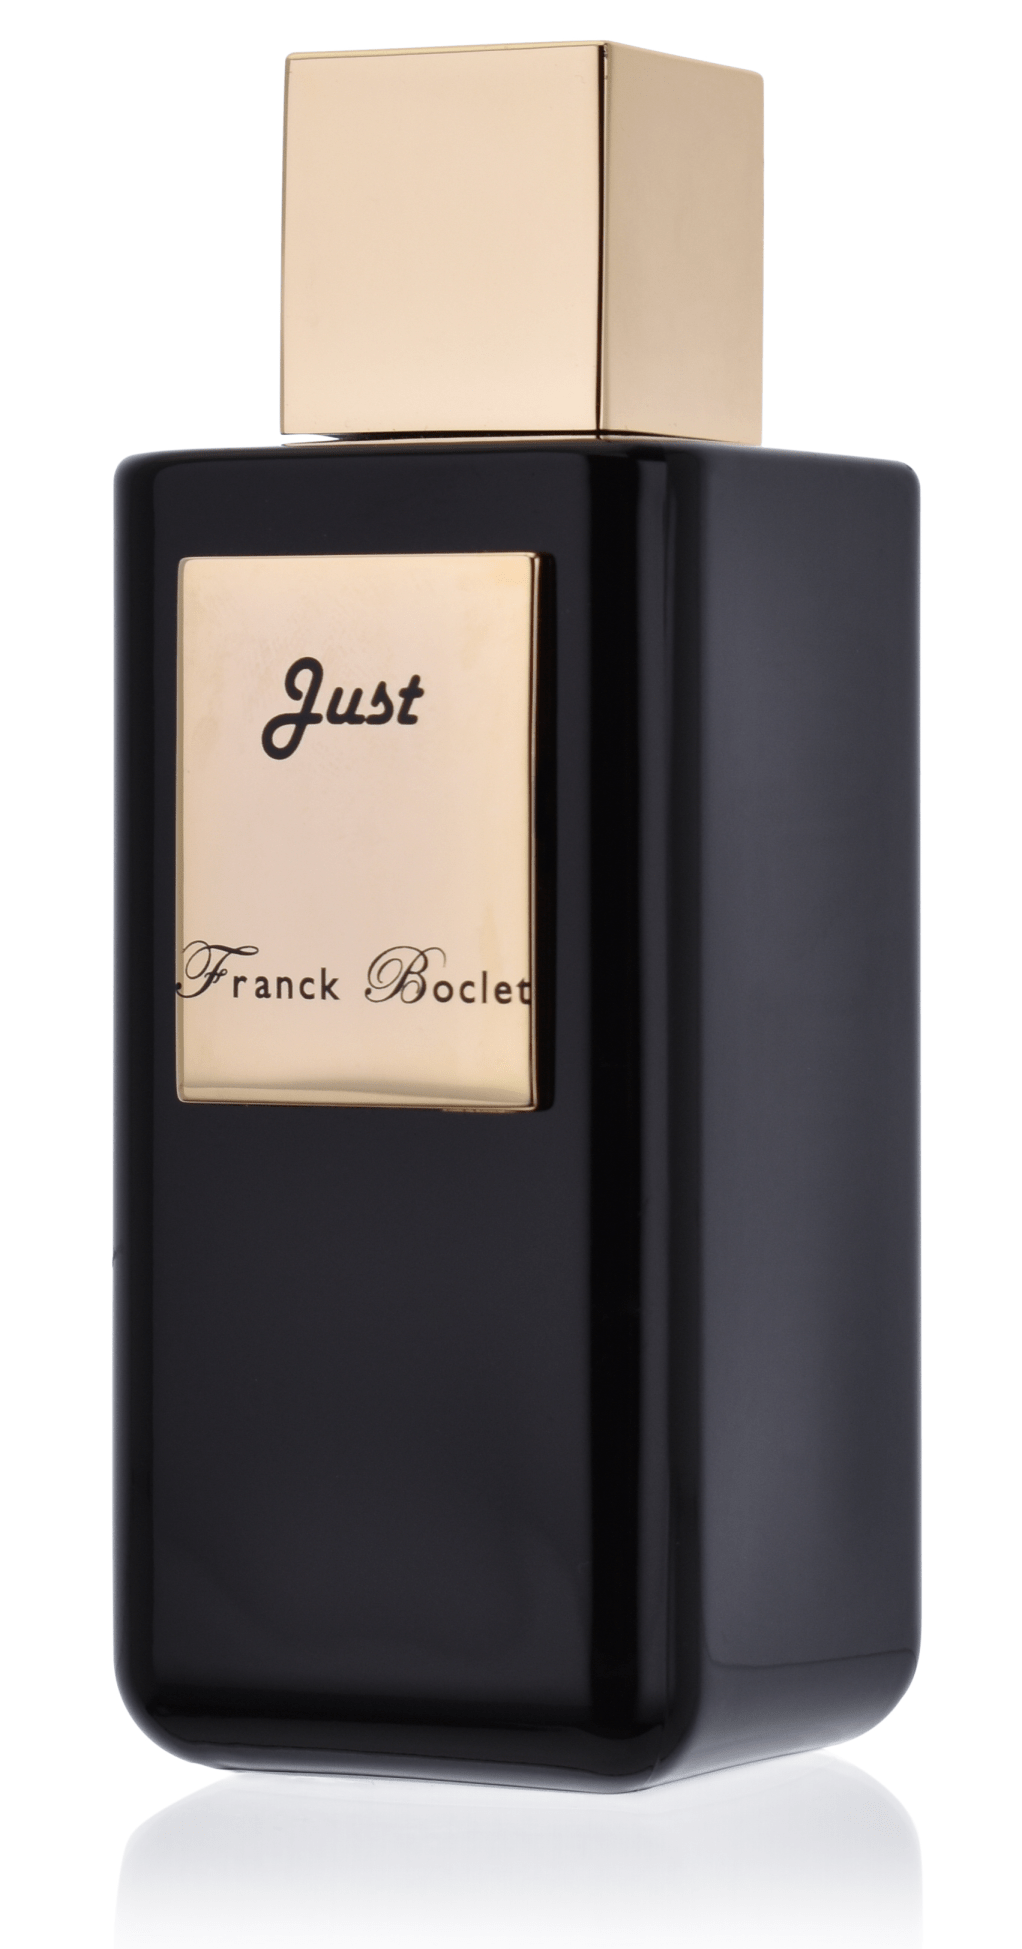 Franck Boclet Just 5 ml Extrait de Parfum Abfüllung 